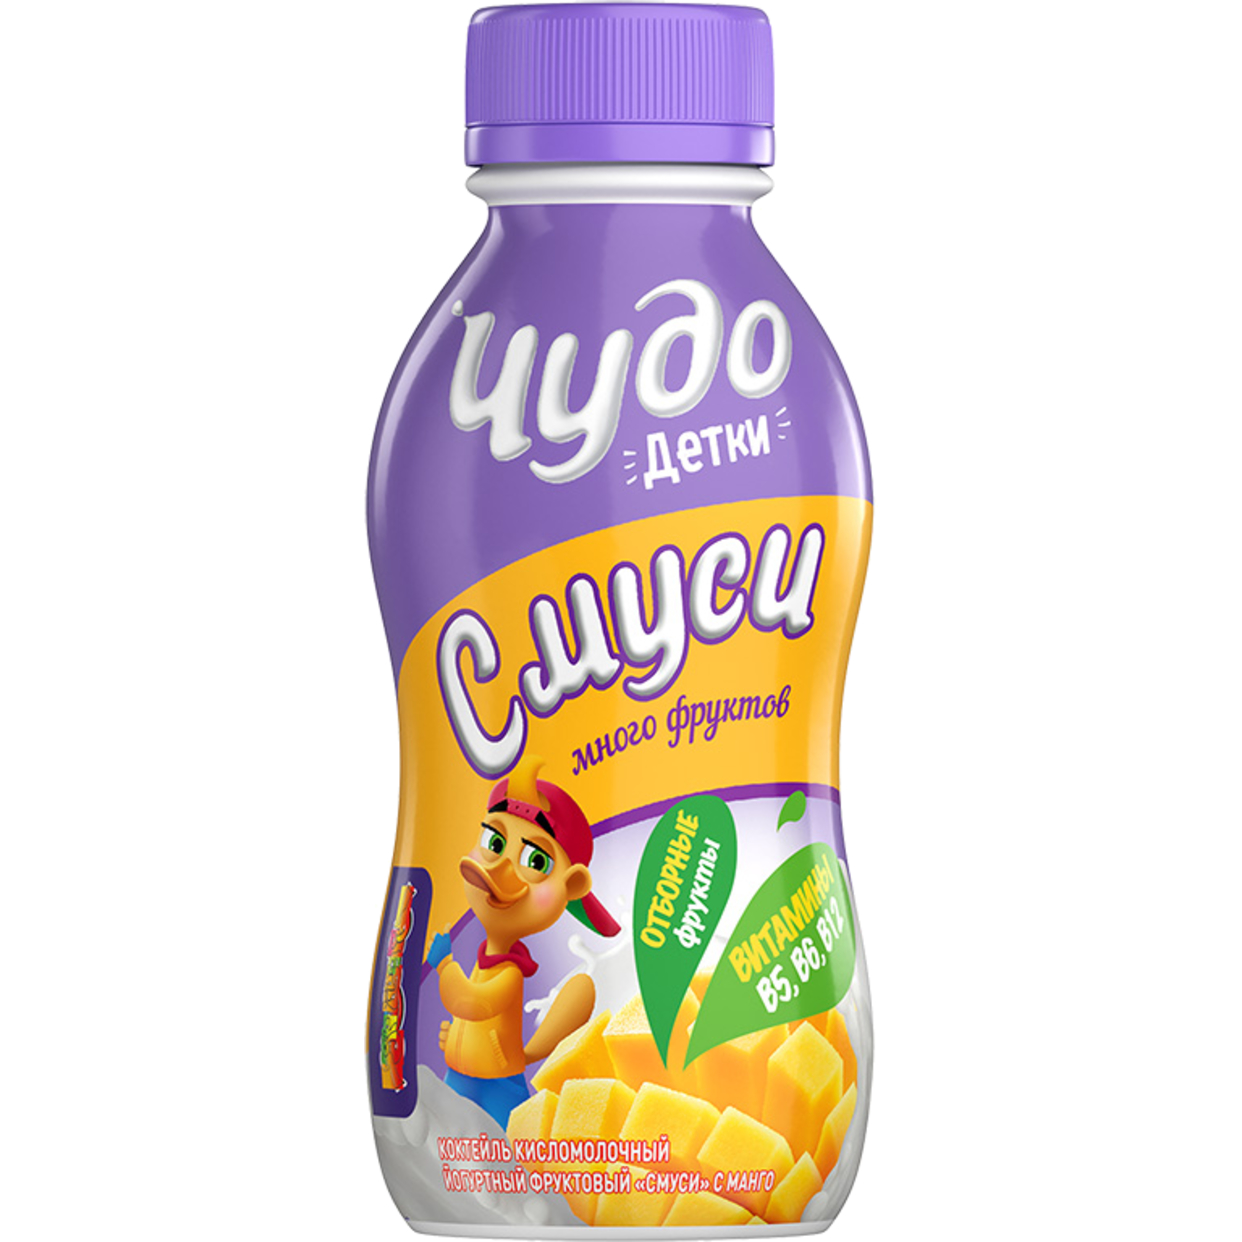 БЗМЖ Коктейль кисломолочный йогуртный фруктовый "Смуси" с манго, с витаминами и пребиотиком "Чудо Детки" 1.9% 200г Бутылка пластик